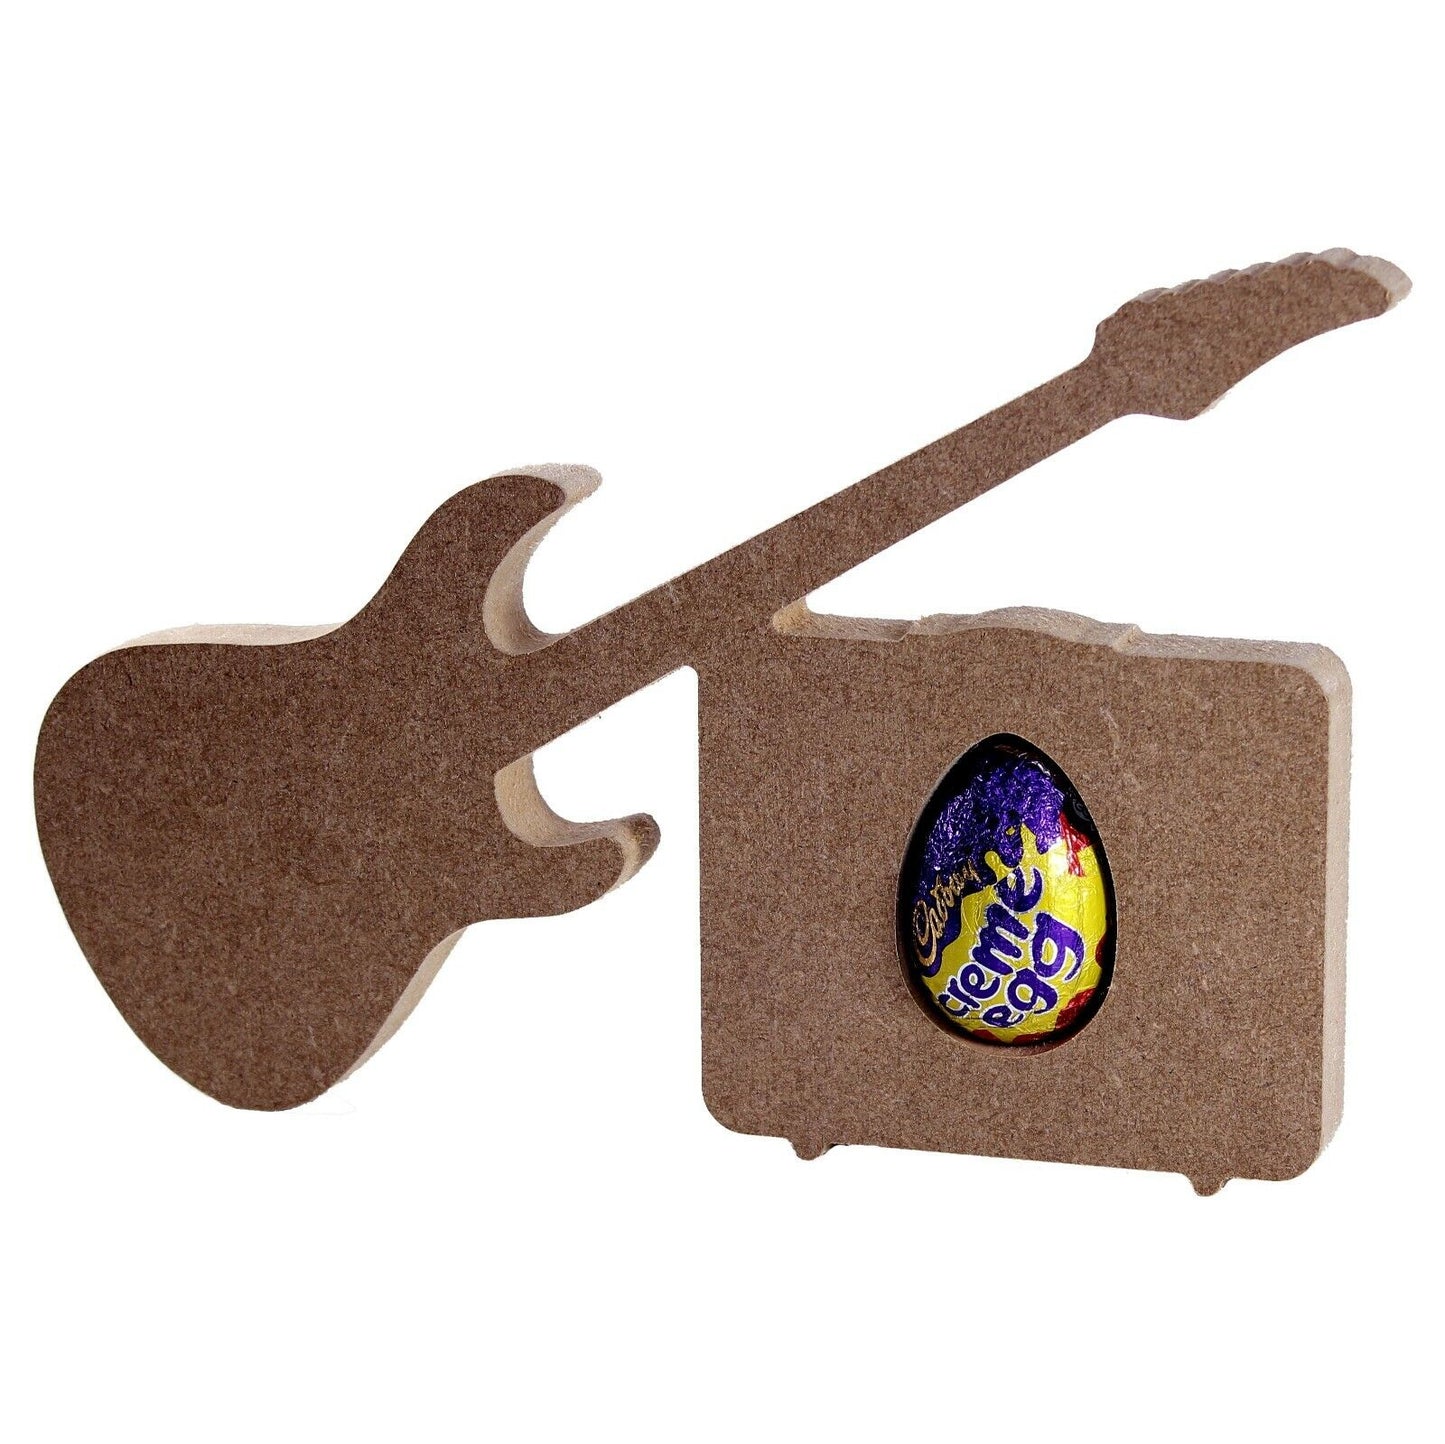 Free Standing 18mm MDF Guitar and Amp Egg Holder. Kinder Egg, Creme Egg. Music